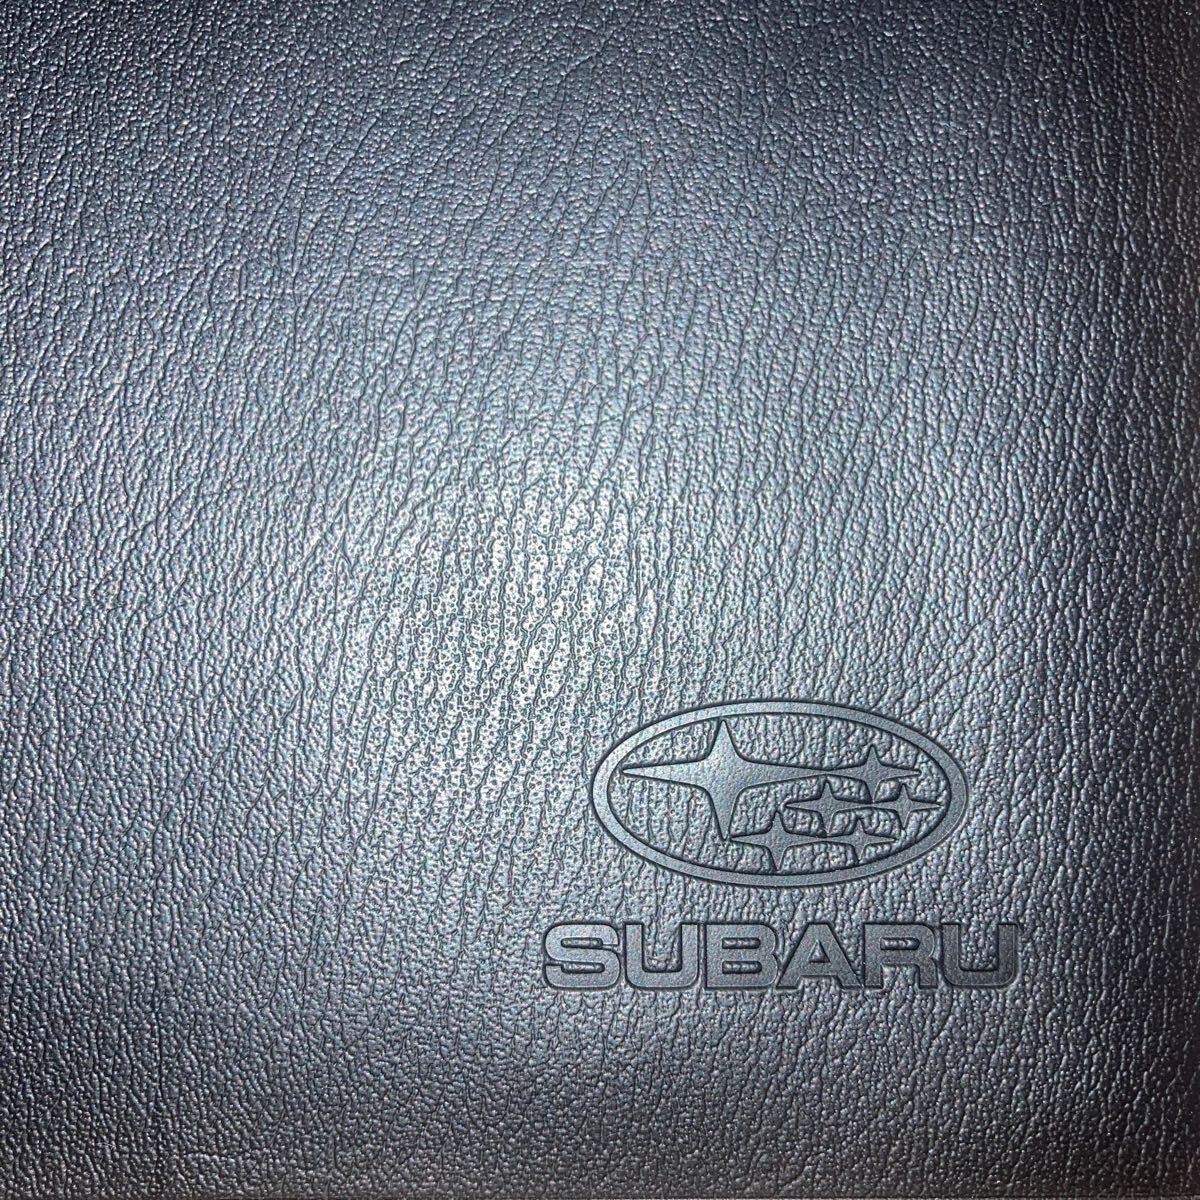 SUBARU スバル車検証ケース 車検証入れ 薄型 ブックレット ブックカバー カードポケットの画像9